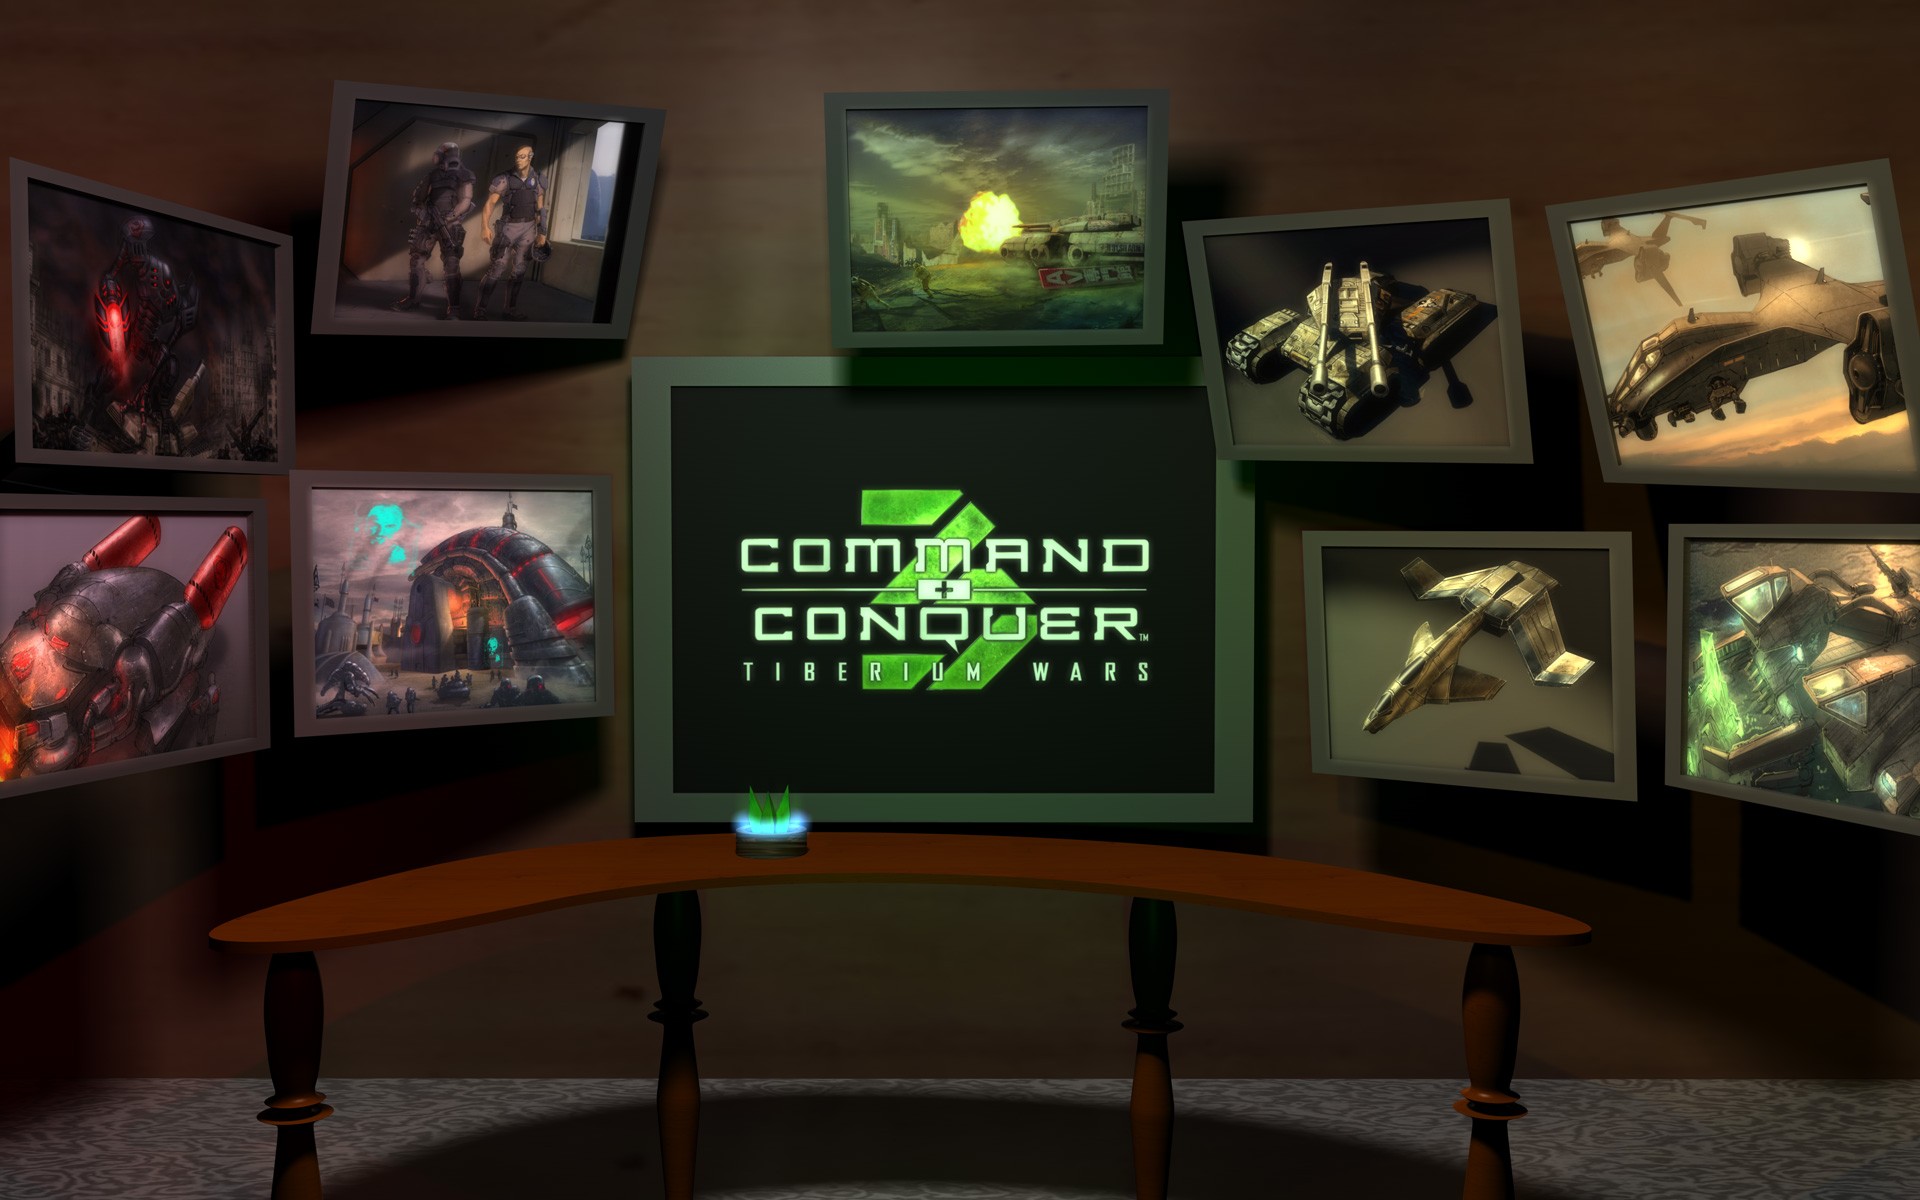 デスクトップ上の275127壁紙とCommand & Conquer 3: ティベリウム ウォーズ画像。 PCにスクリーンセーバーを無料でダウンロード